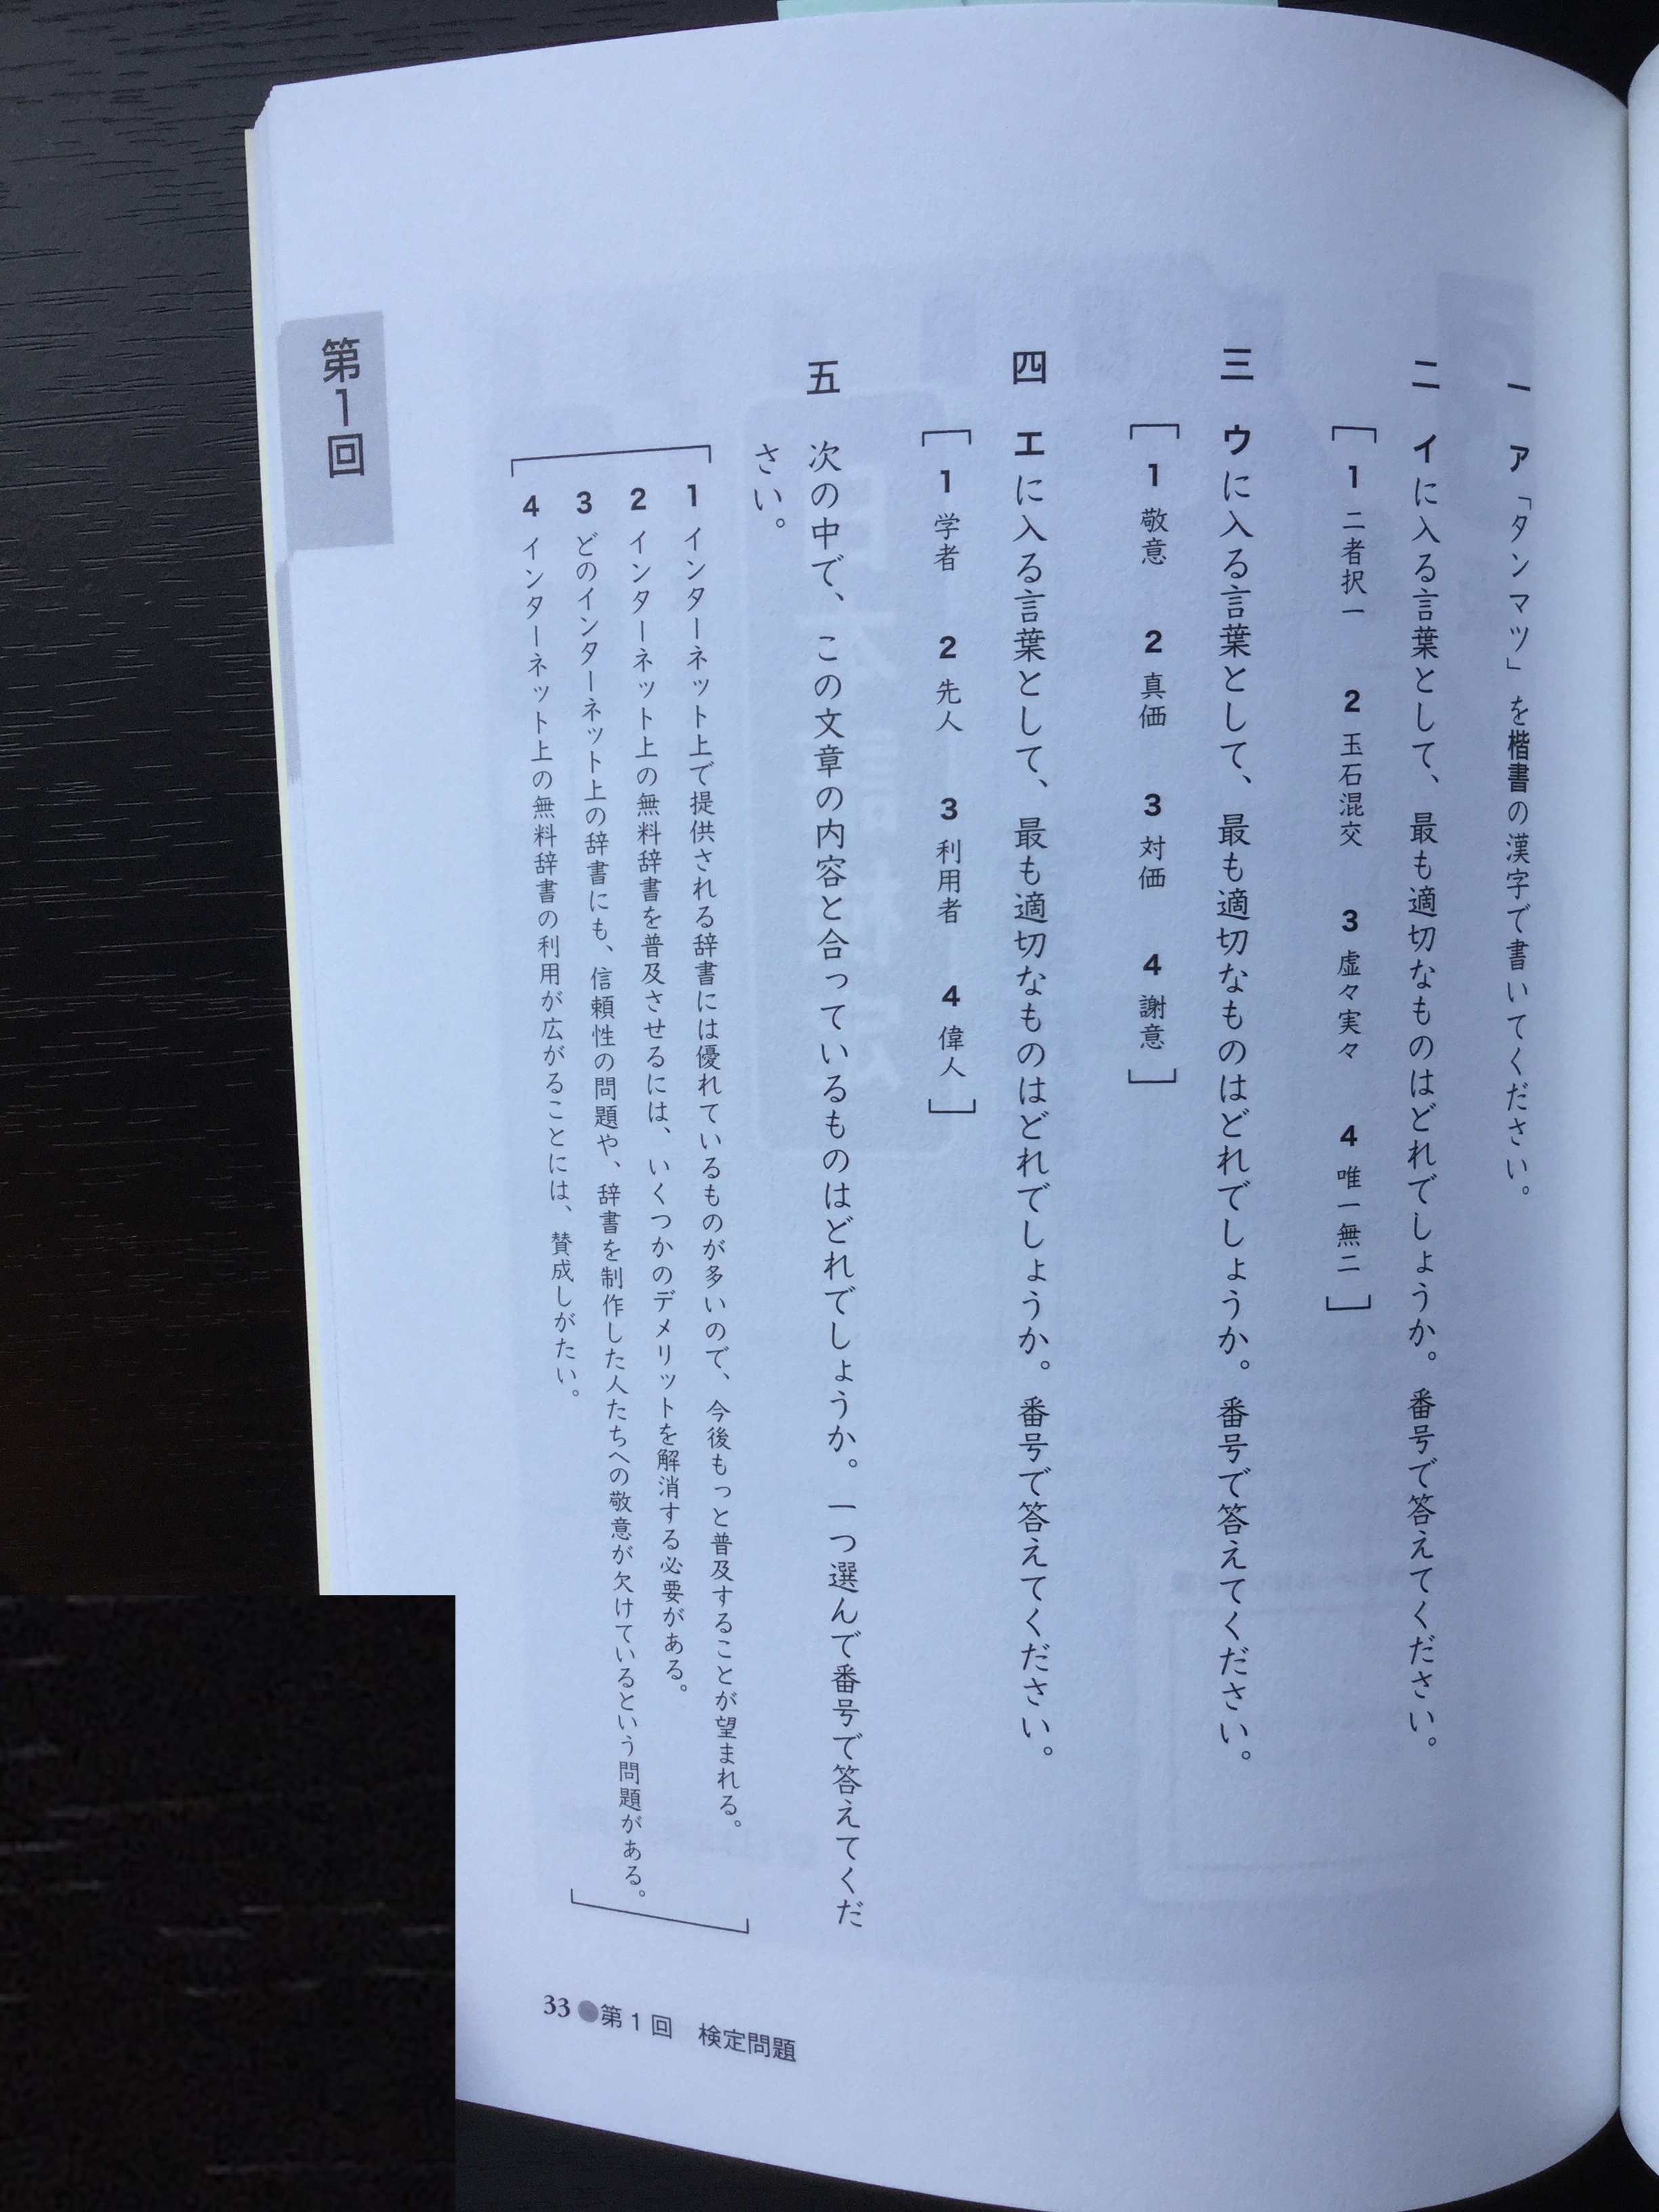 日本語検定公式過去問題集 3級 19年度版 資格hacker